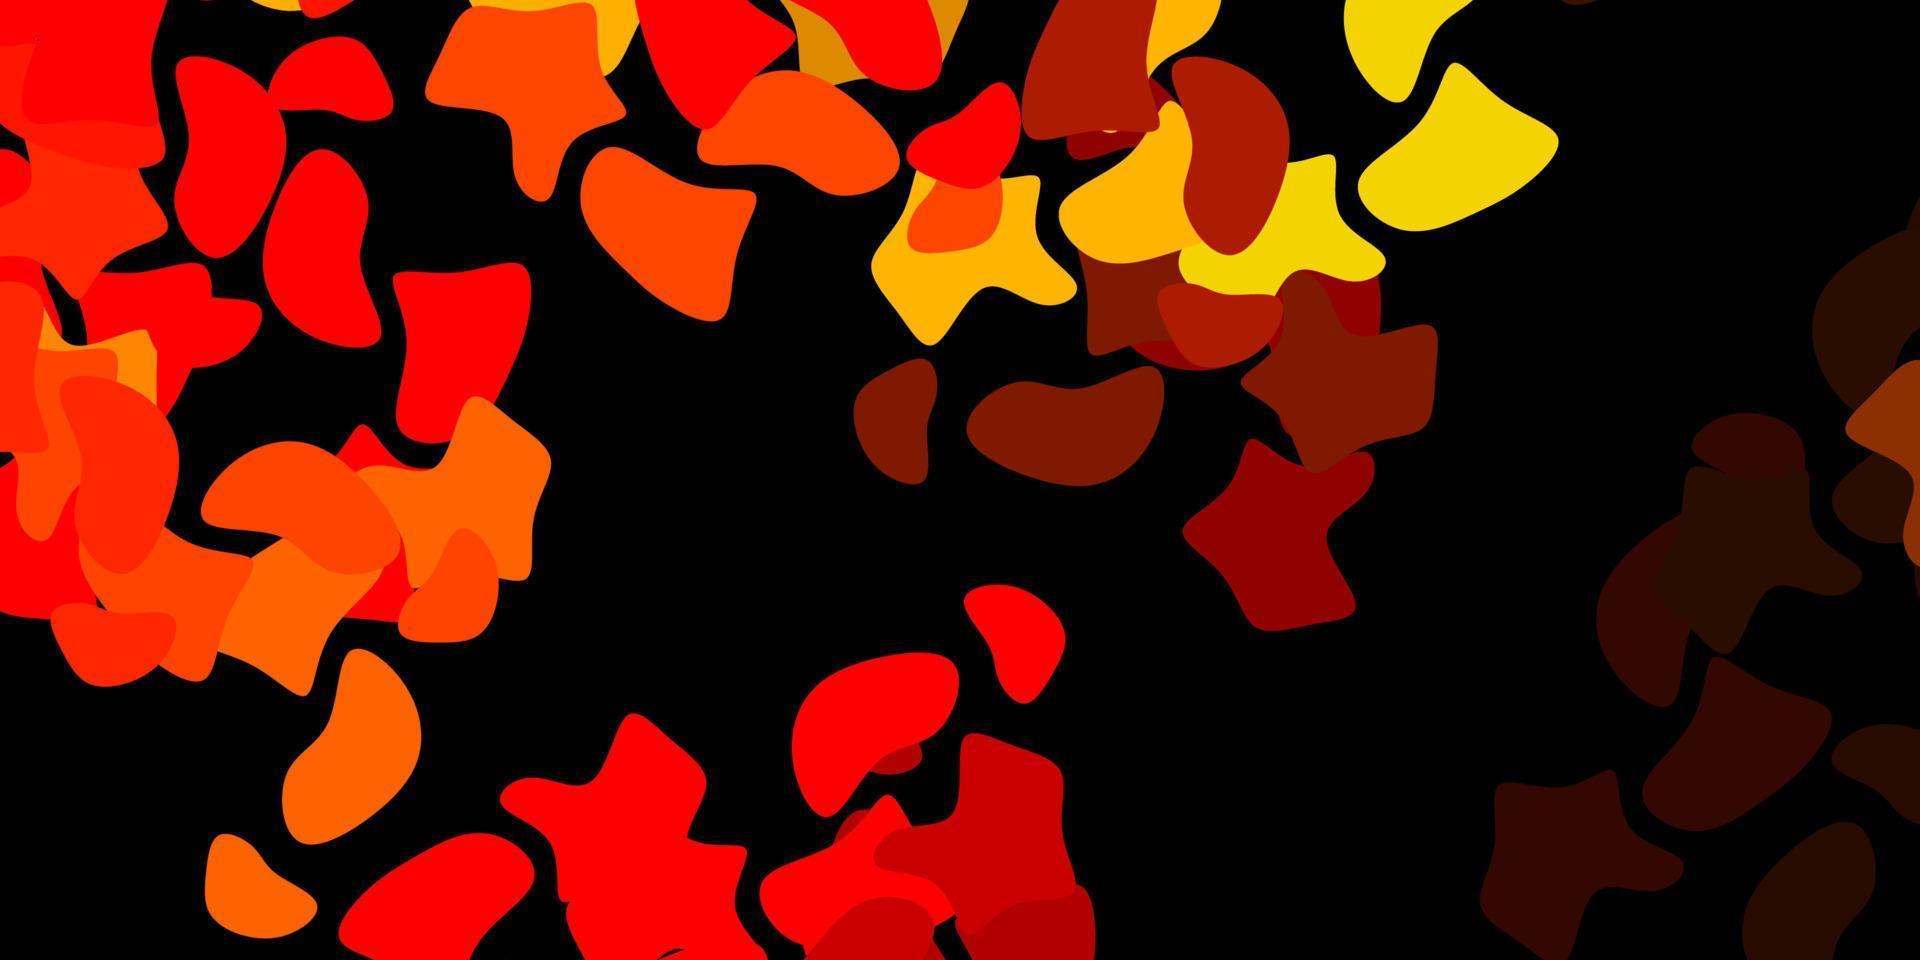 textura de vector rojo oscuro, amarillo con formas de memphis.